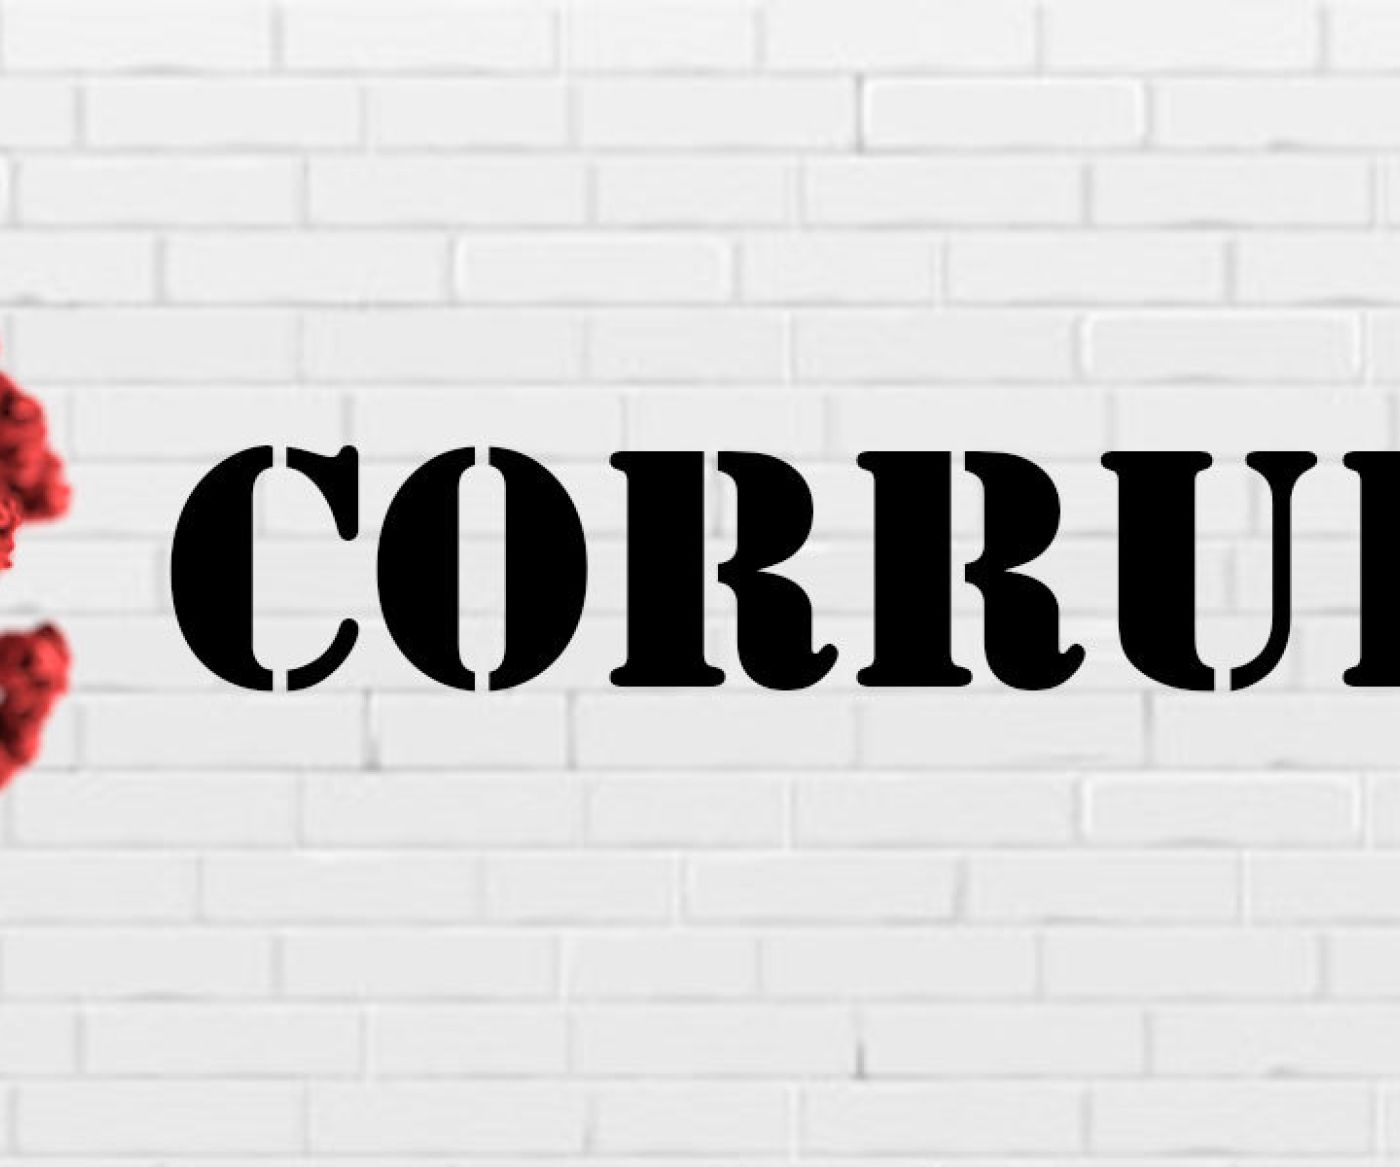 Covid Corruption